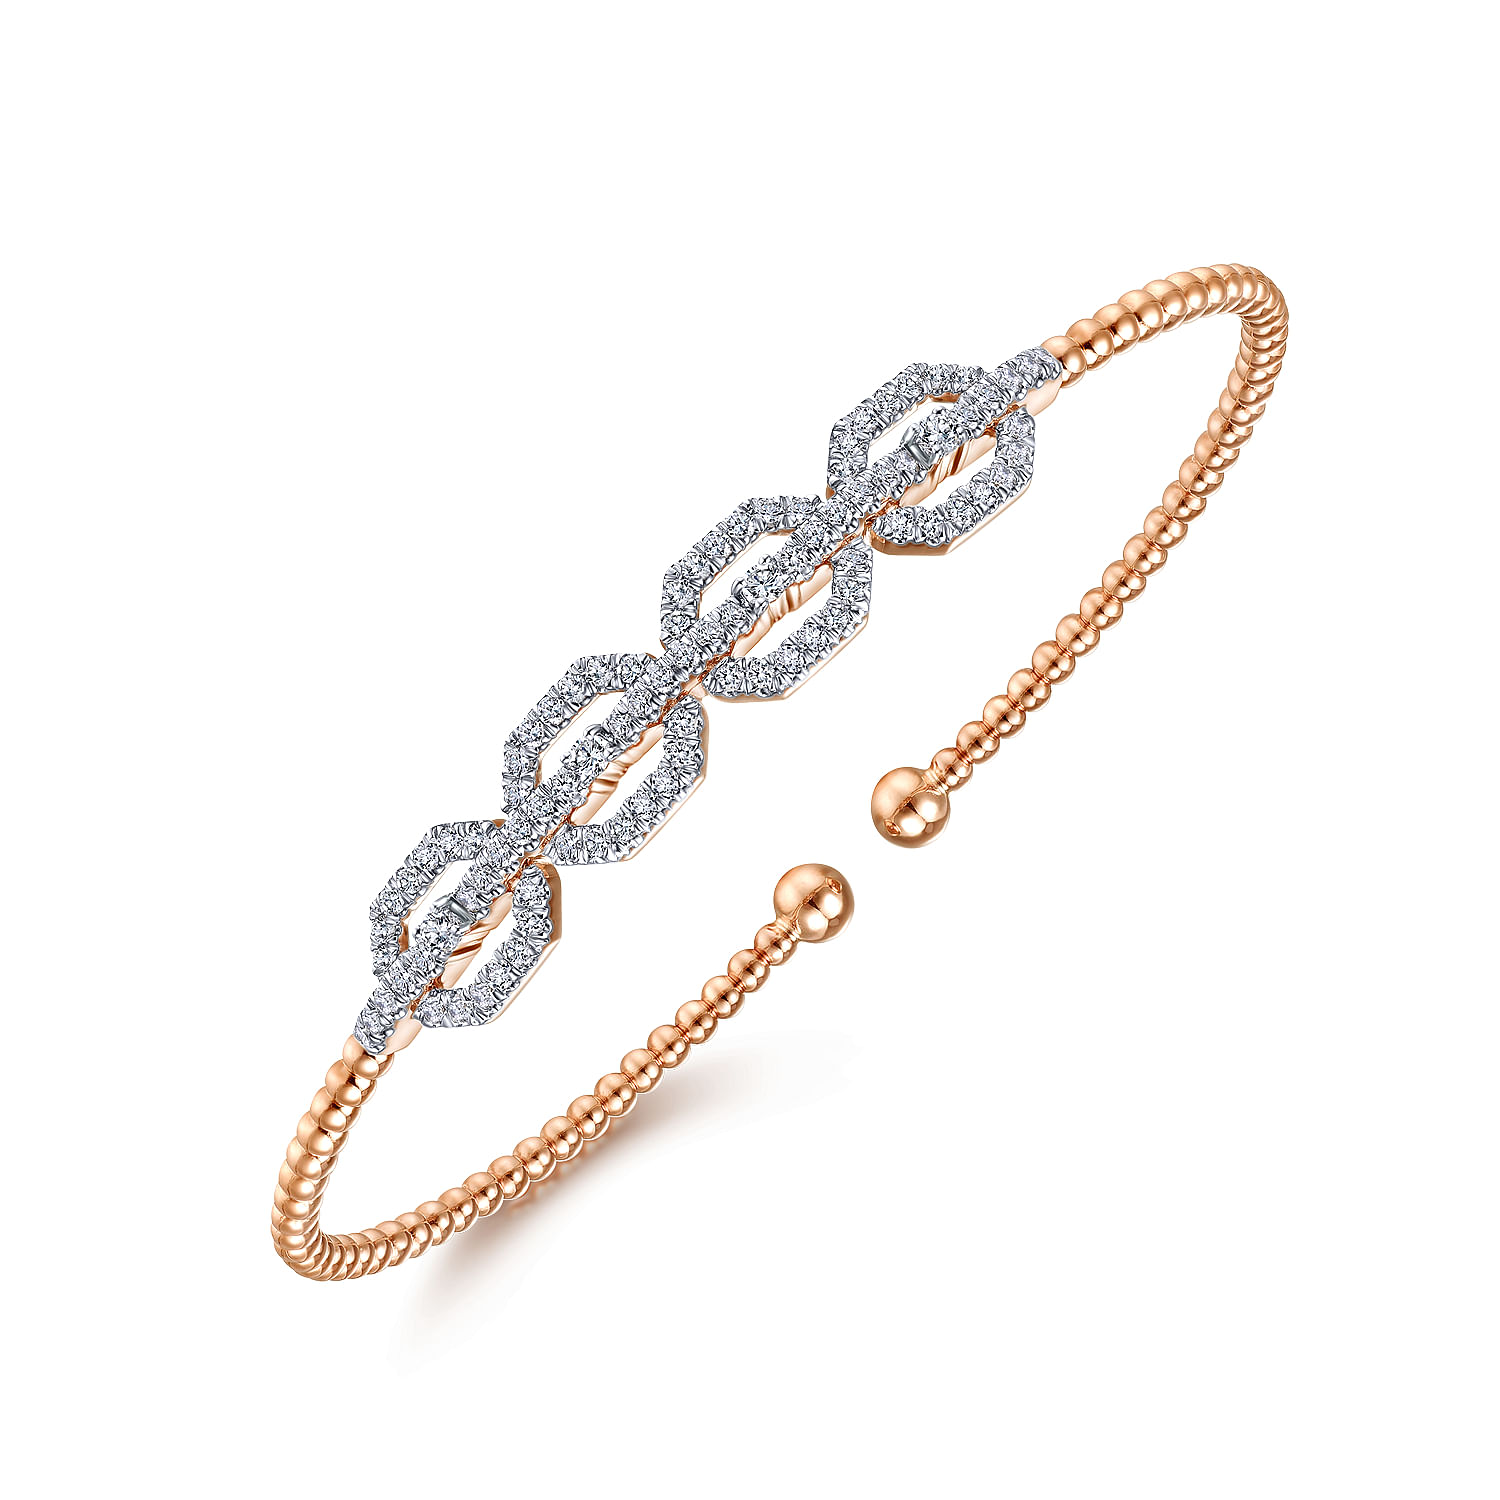 14K Rose Gold Bujukan Bead Cuff Bracelet with Diamond Pavé Links